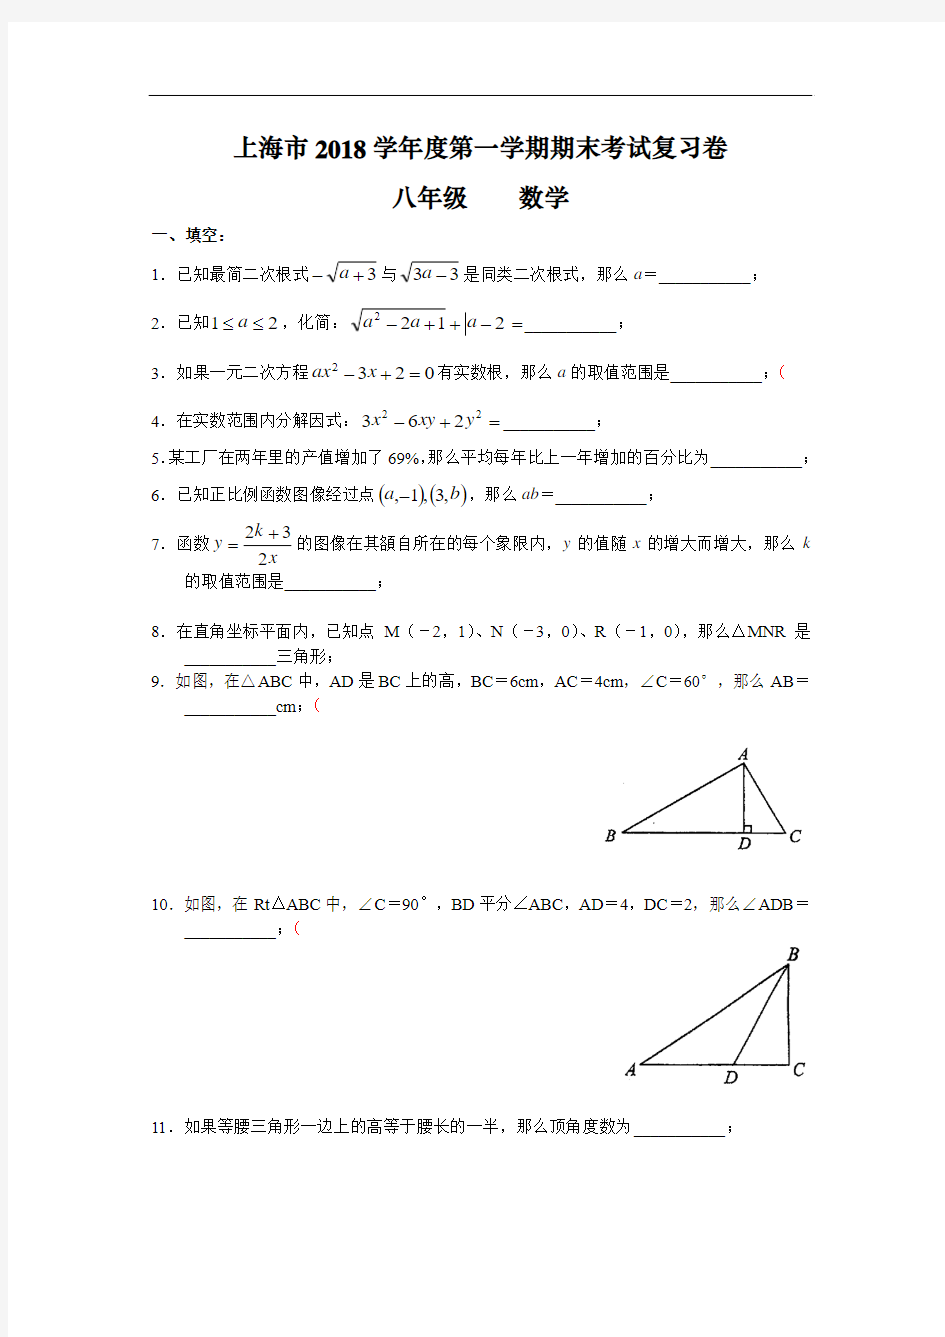 上海市2018学年度第一学期期末考试复习卷 八年级(初二)数学 集锦